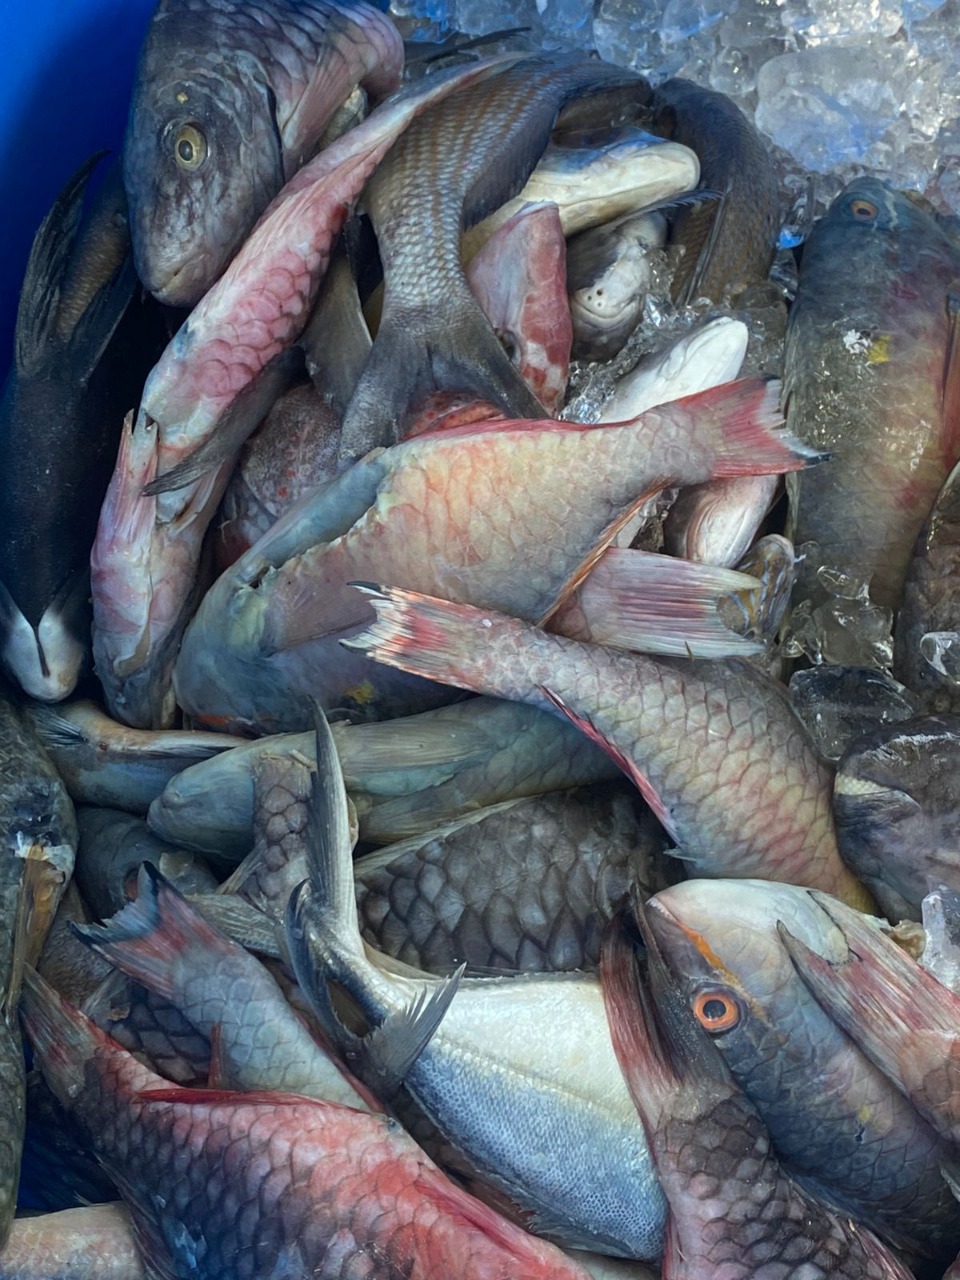 Medio Ambiente decomisa 1,732 libras de pescados y lambies en veda durante operativo